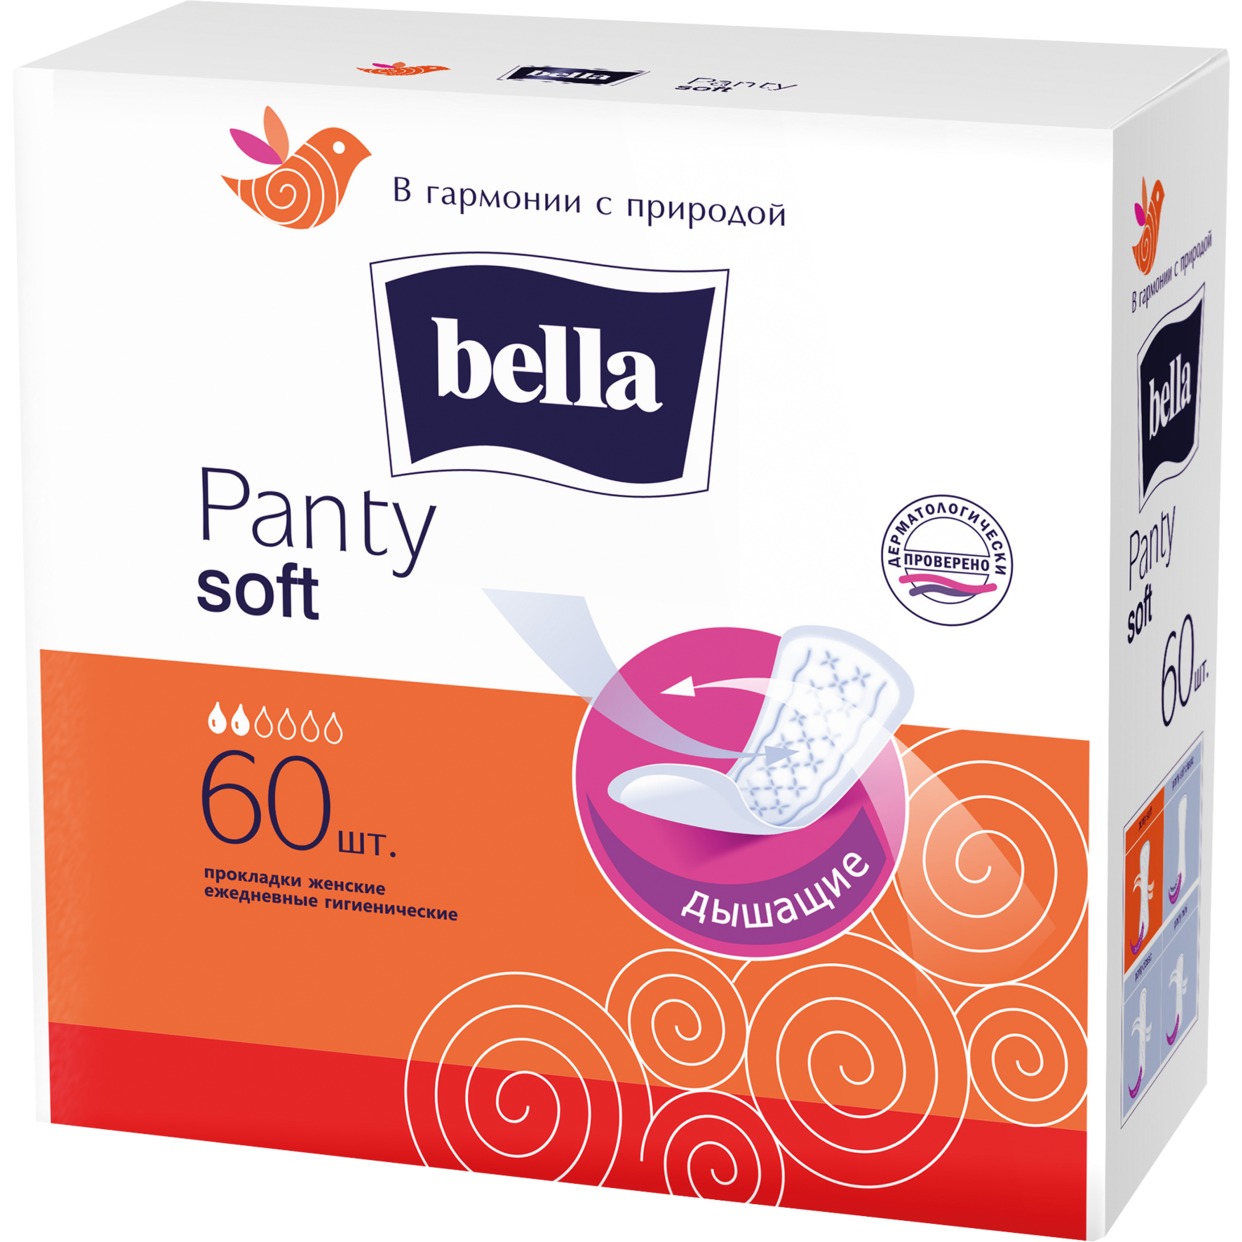 Прокладки ежедневные Bella Panty Soft 50+10шт по акции в Пятерочке